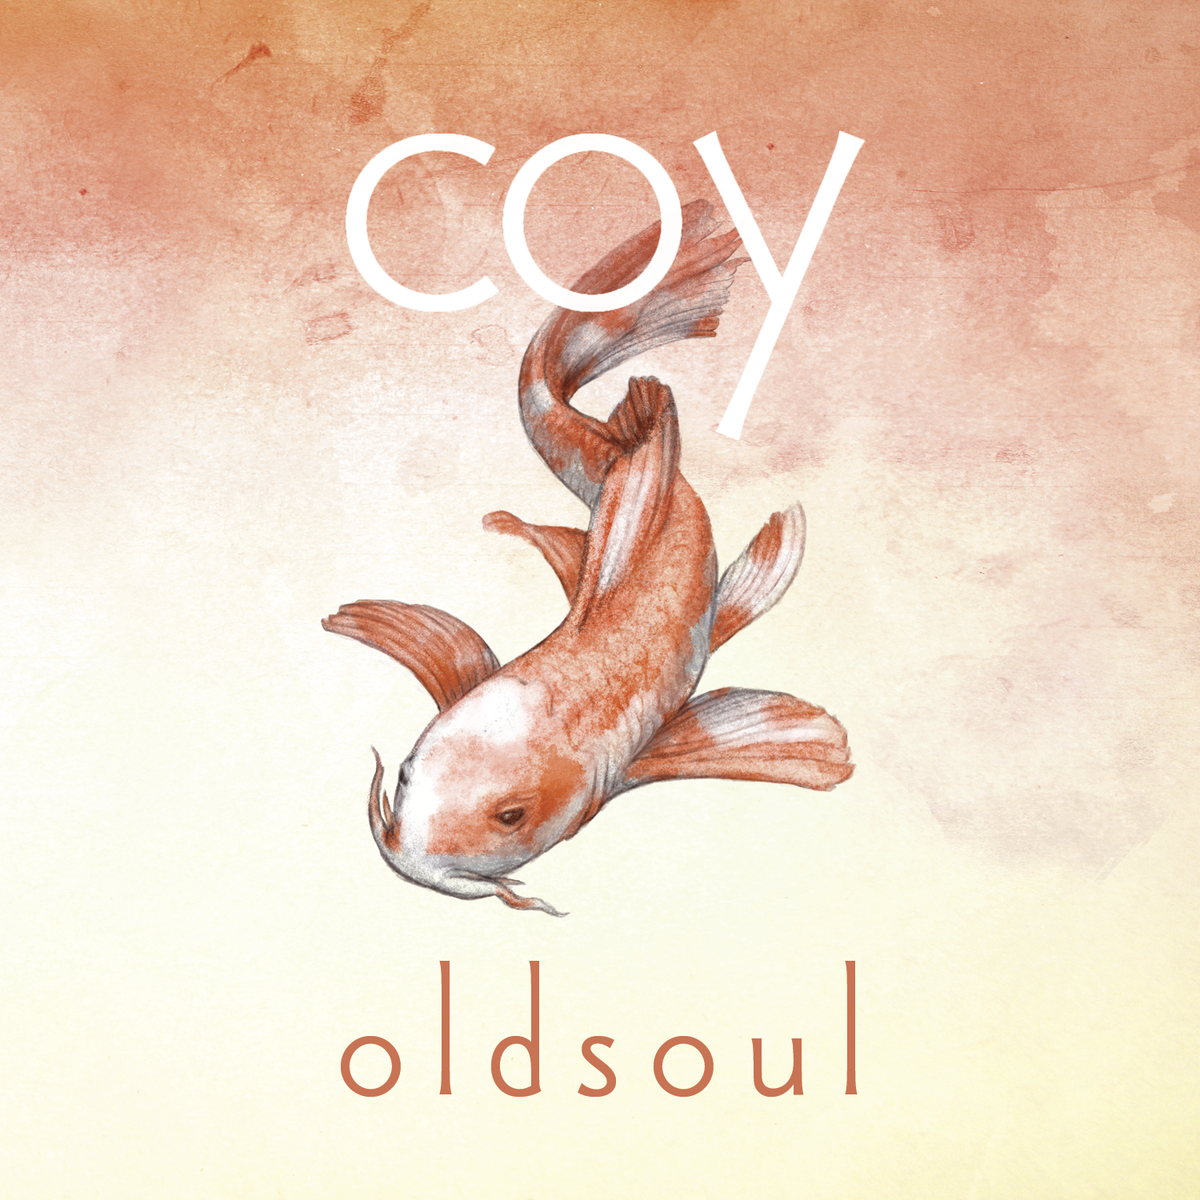 Oldsoul - Coy